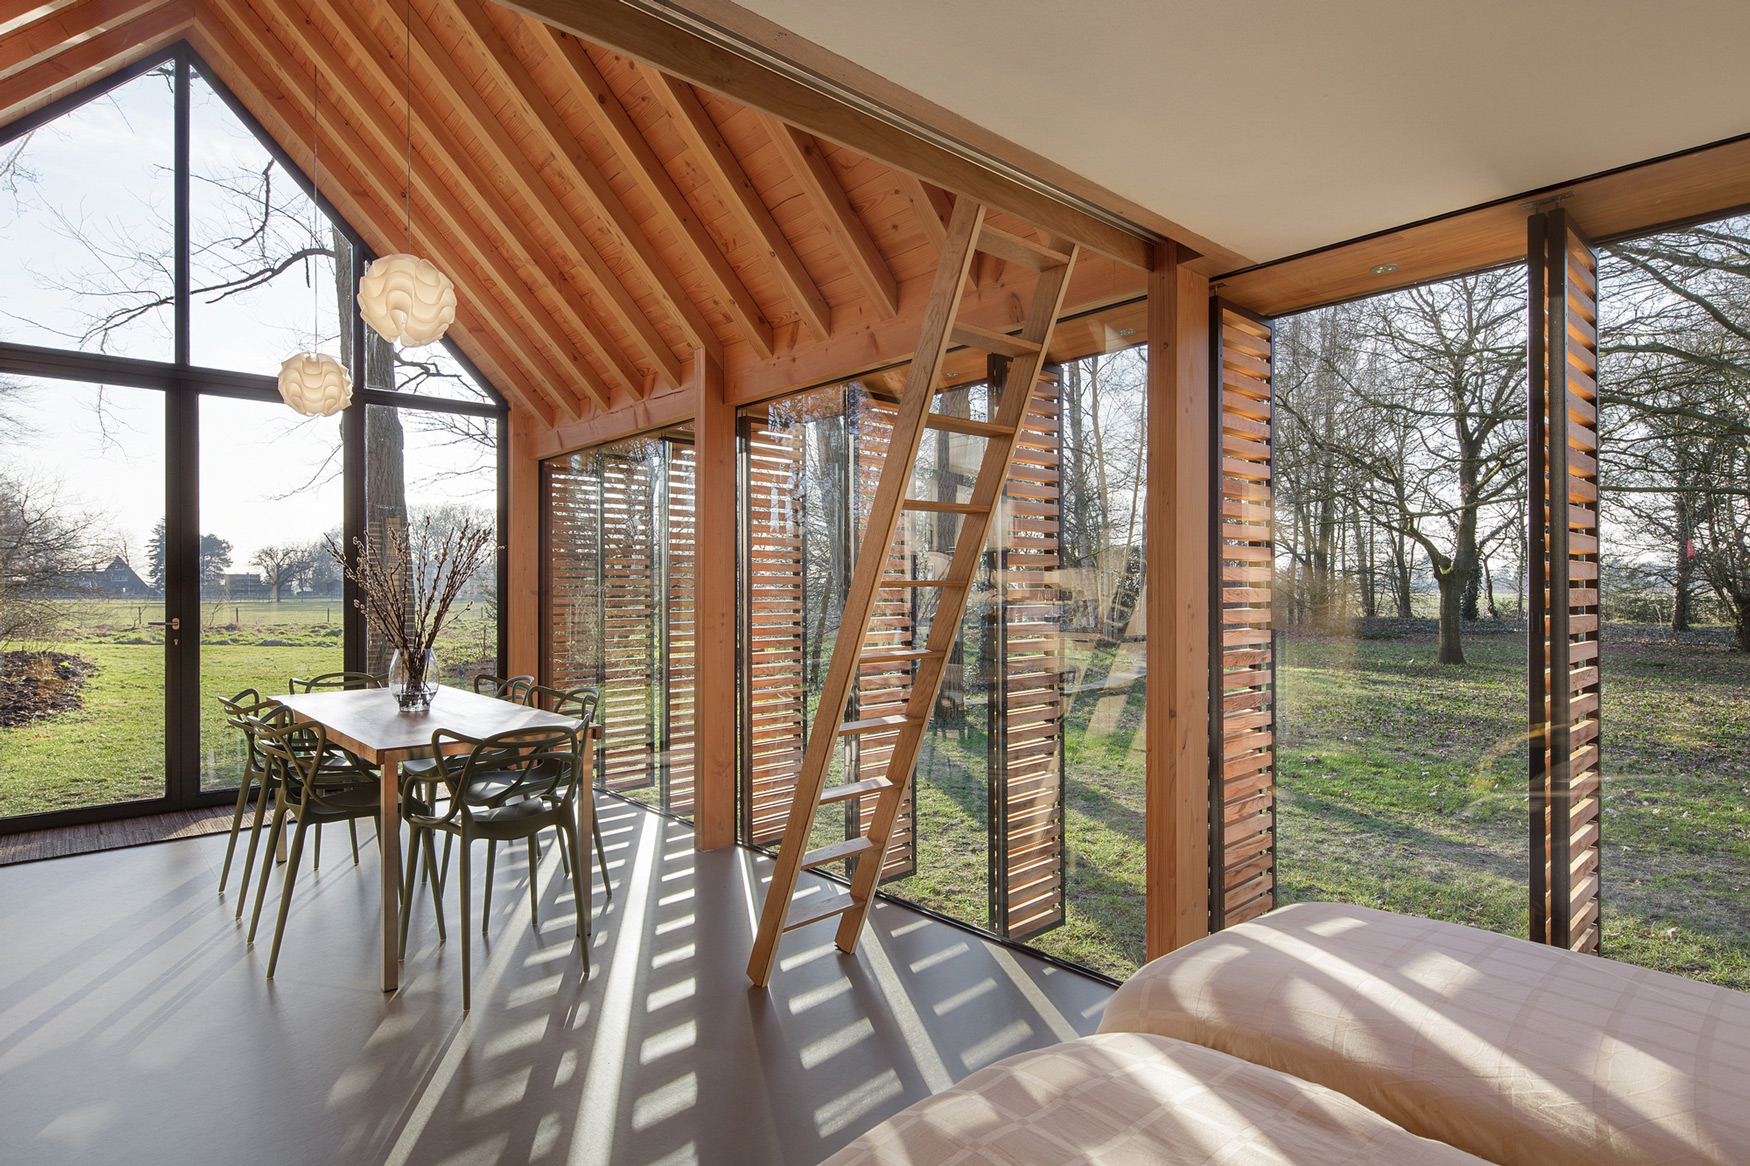 Recreationhouse / Roel van Norel + Zecc Architecten (12)